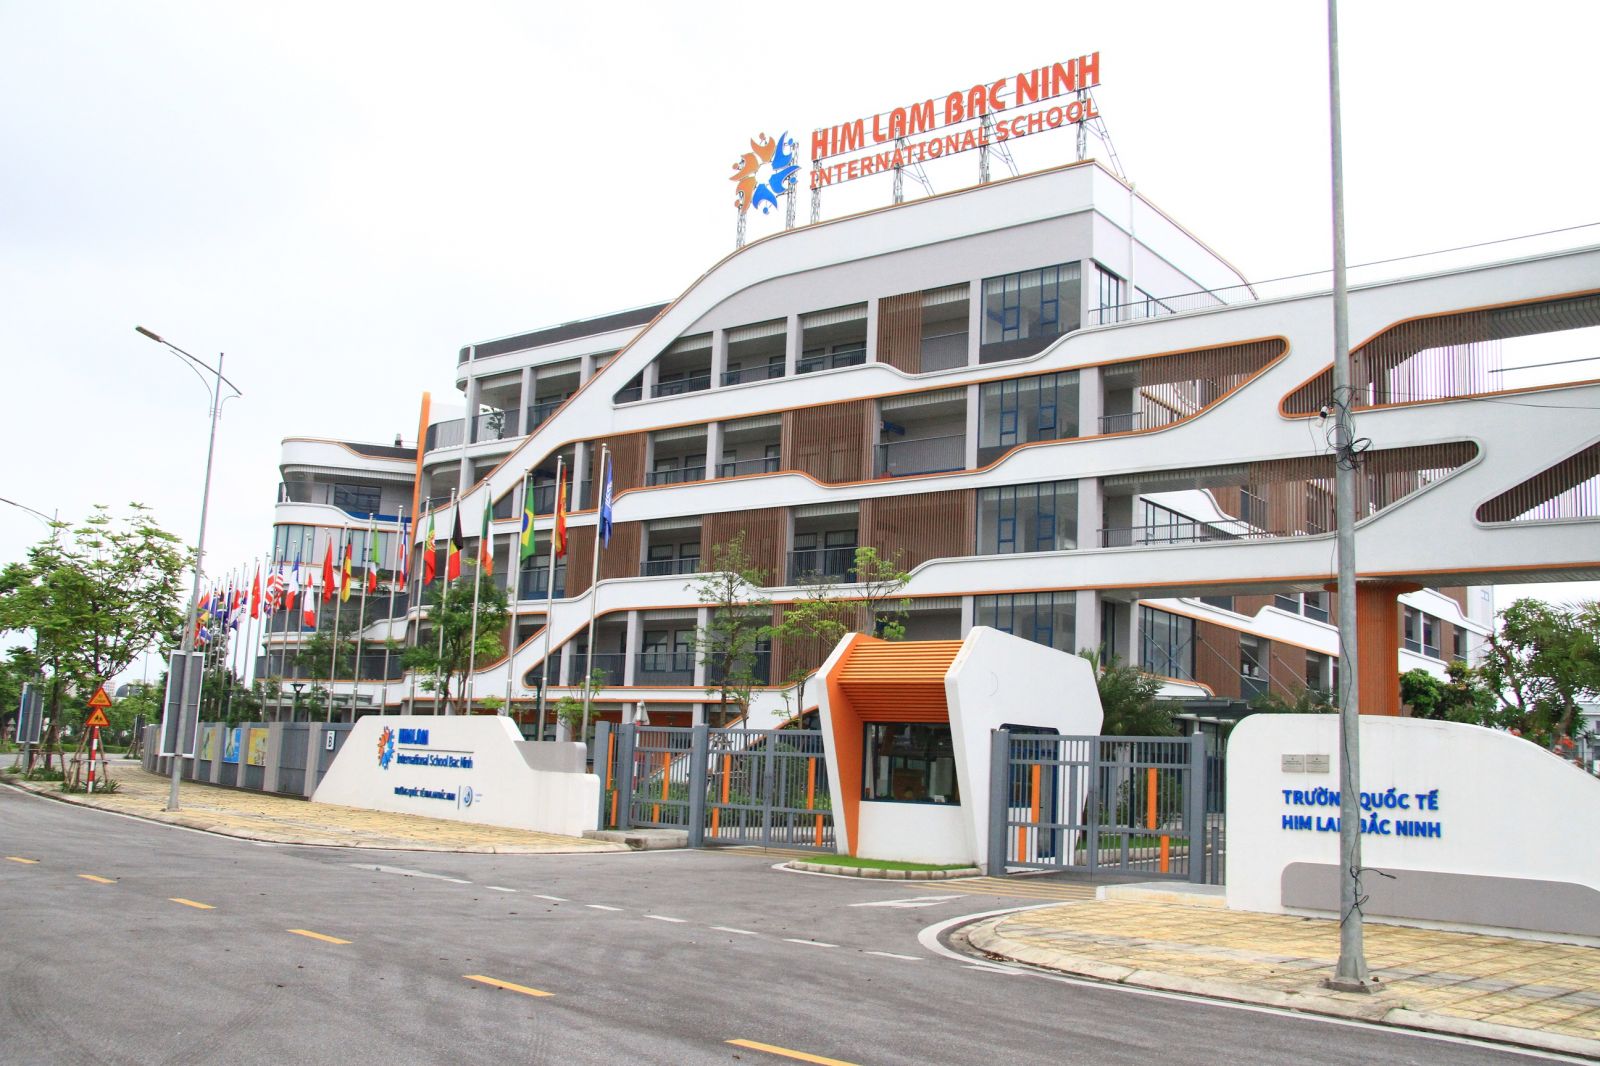 Trường quốc tế Him Lam Bắc Ninh trên địa bàn phường Vân Dương, TP Bắc Ninh